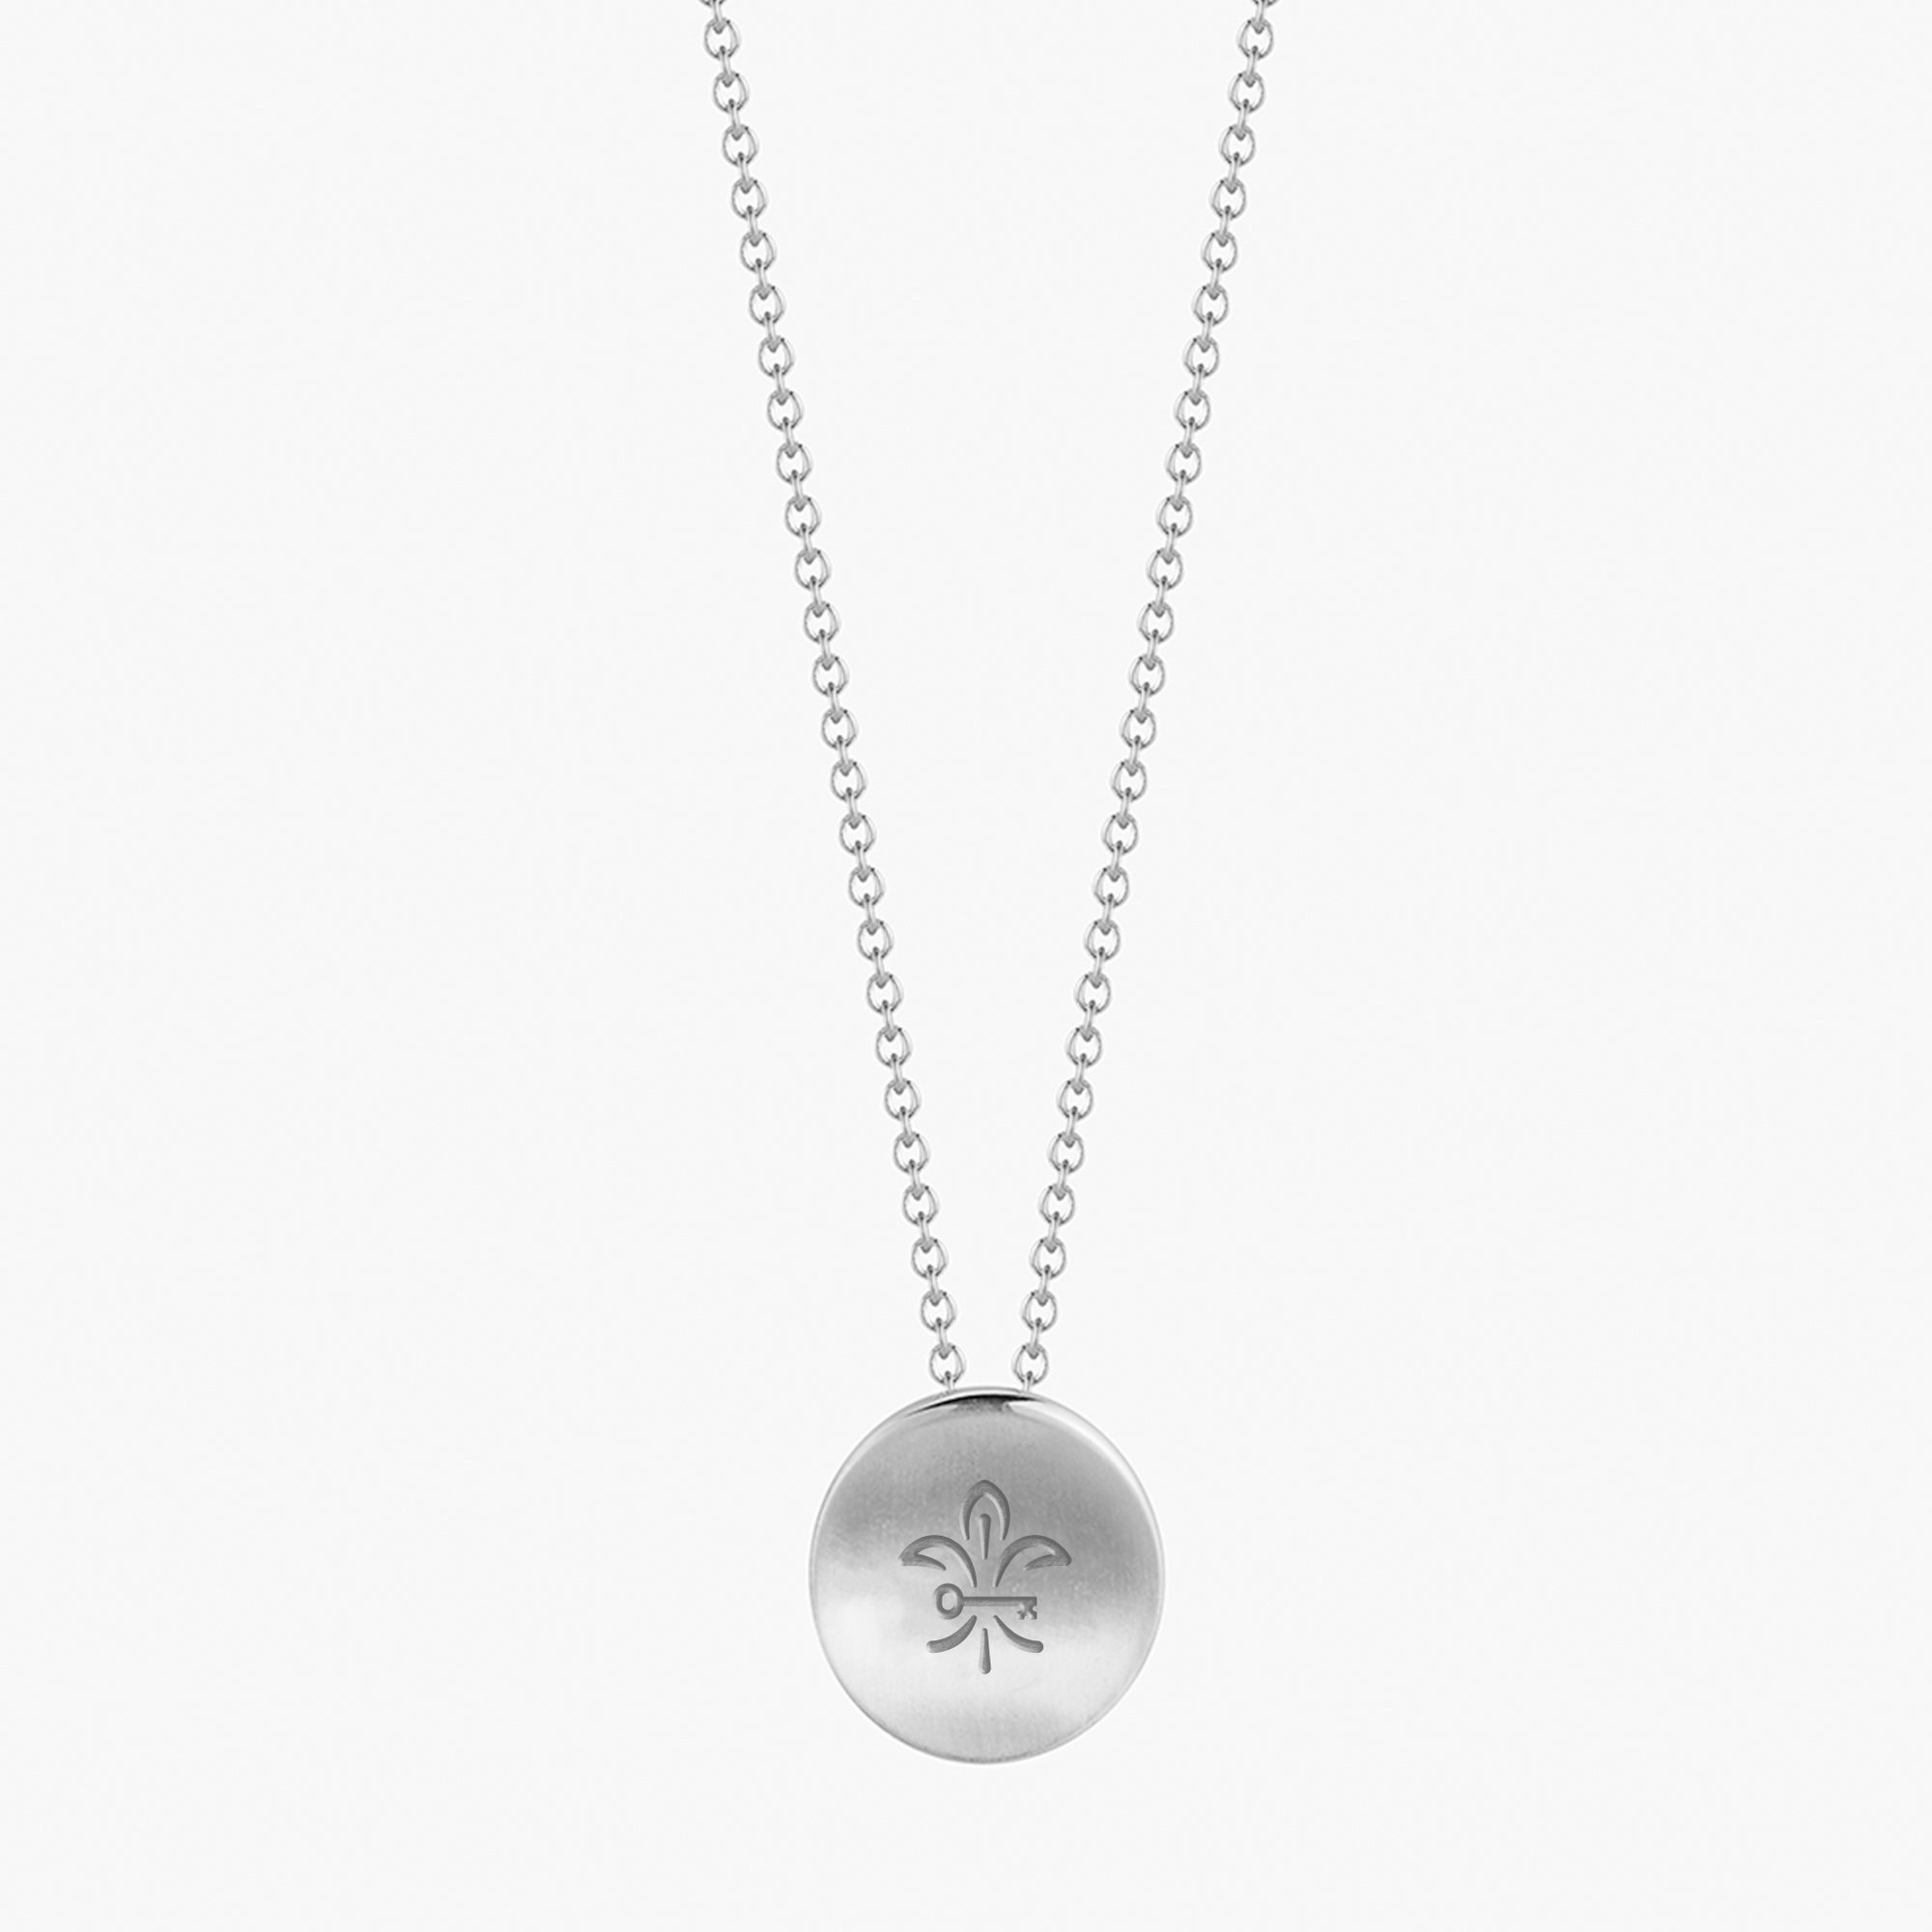 Kappa Kappa Gamma Fleur-de-Lis Necklace Petite in Sterling Silver